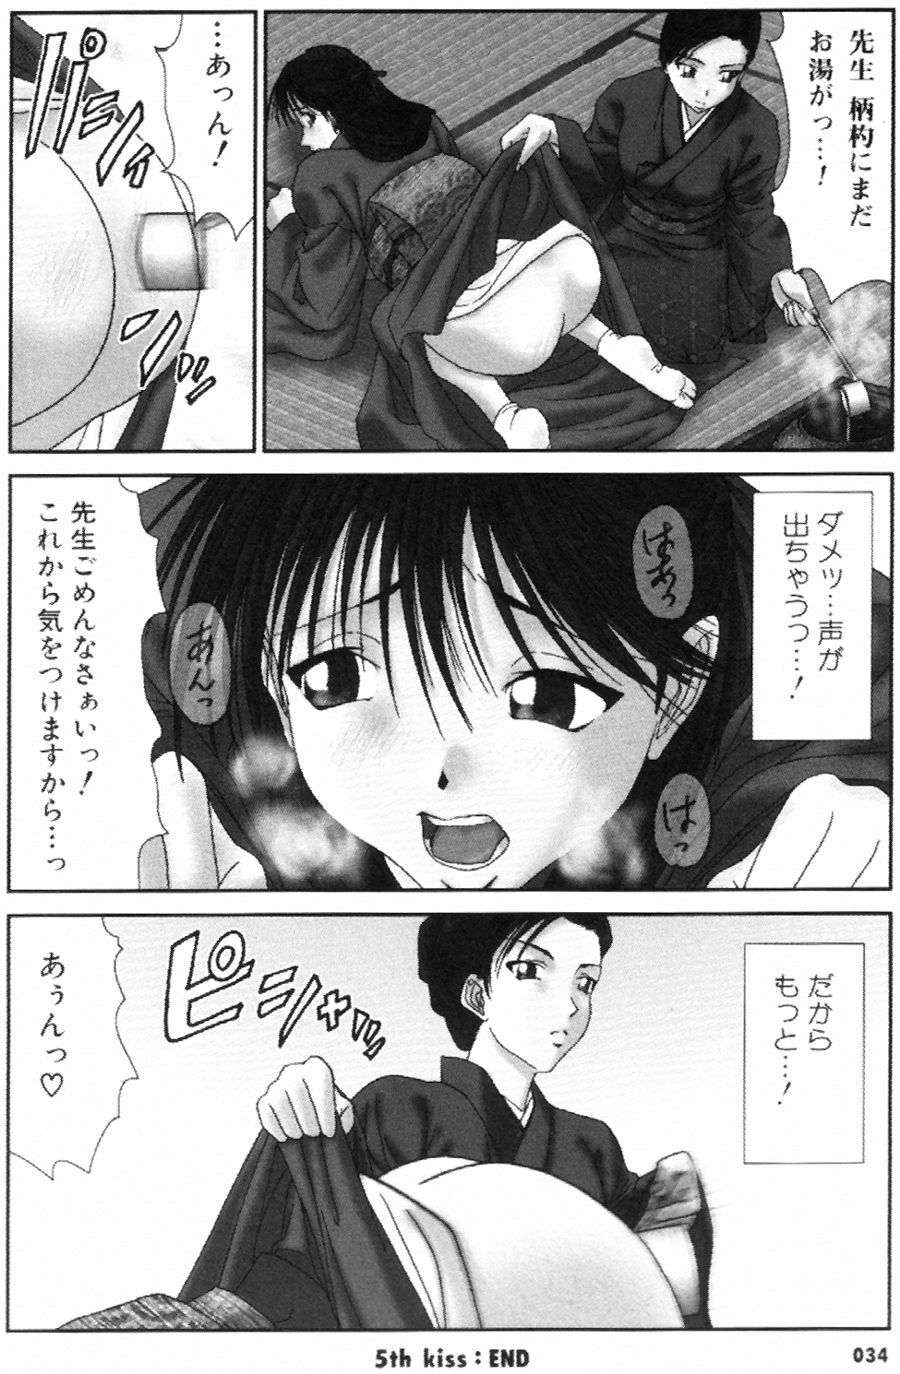 [Ichiro Yumi] i kiss 1 page 34 full